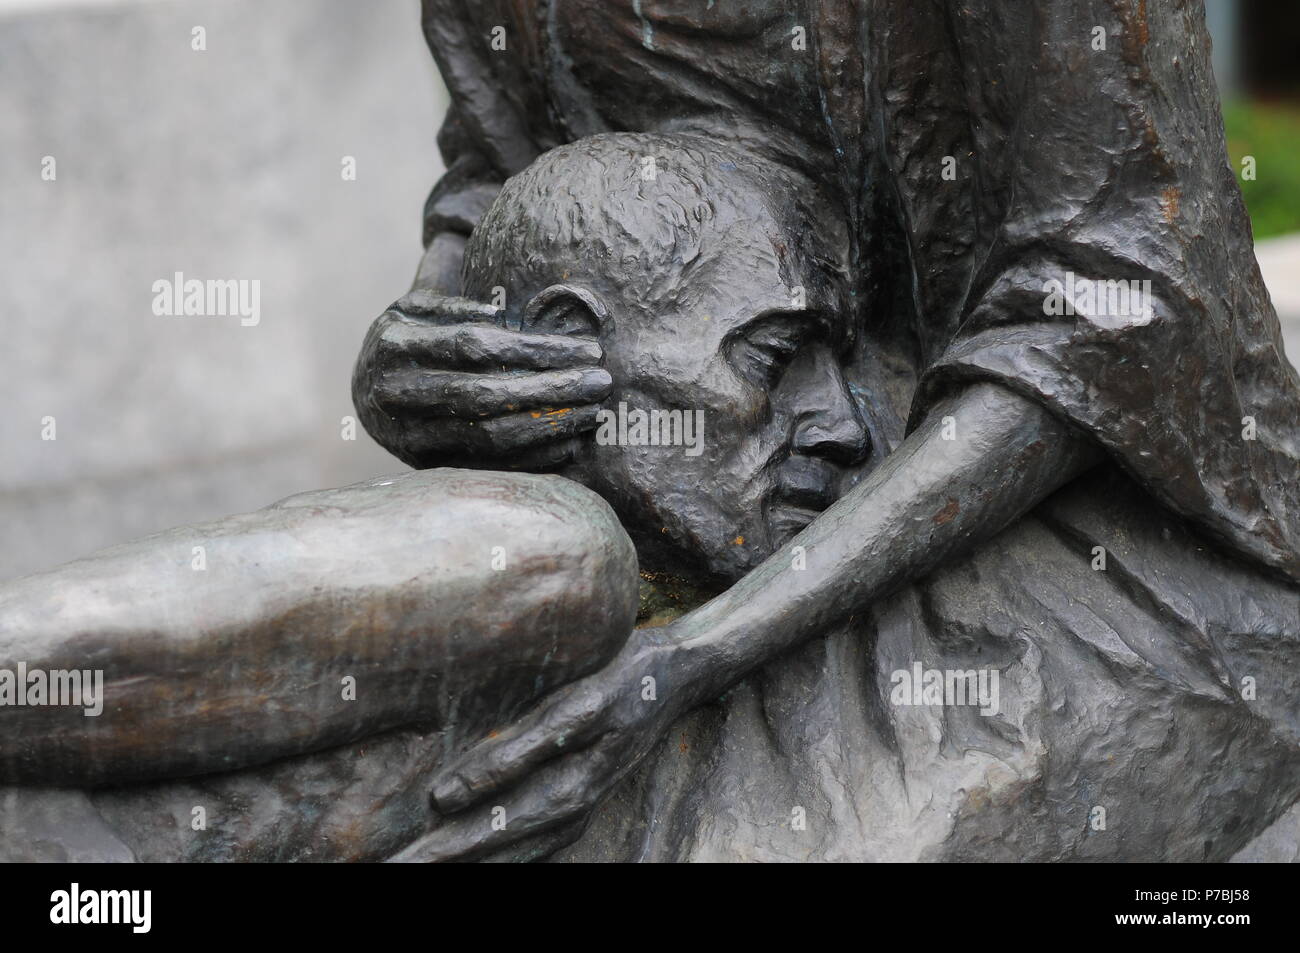 Monumento a las víctimas de la matanza de Katyn (Pomnik Ofiar Zbrodni Katyńskiej) Wroclaw, Polonia, en junio de 2018 Foto de stock